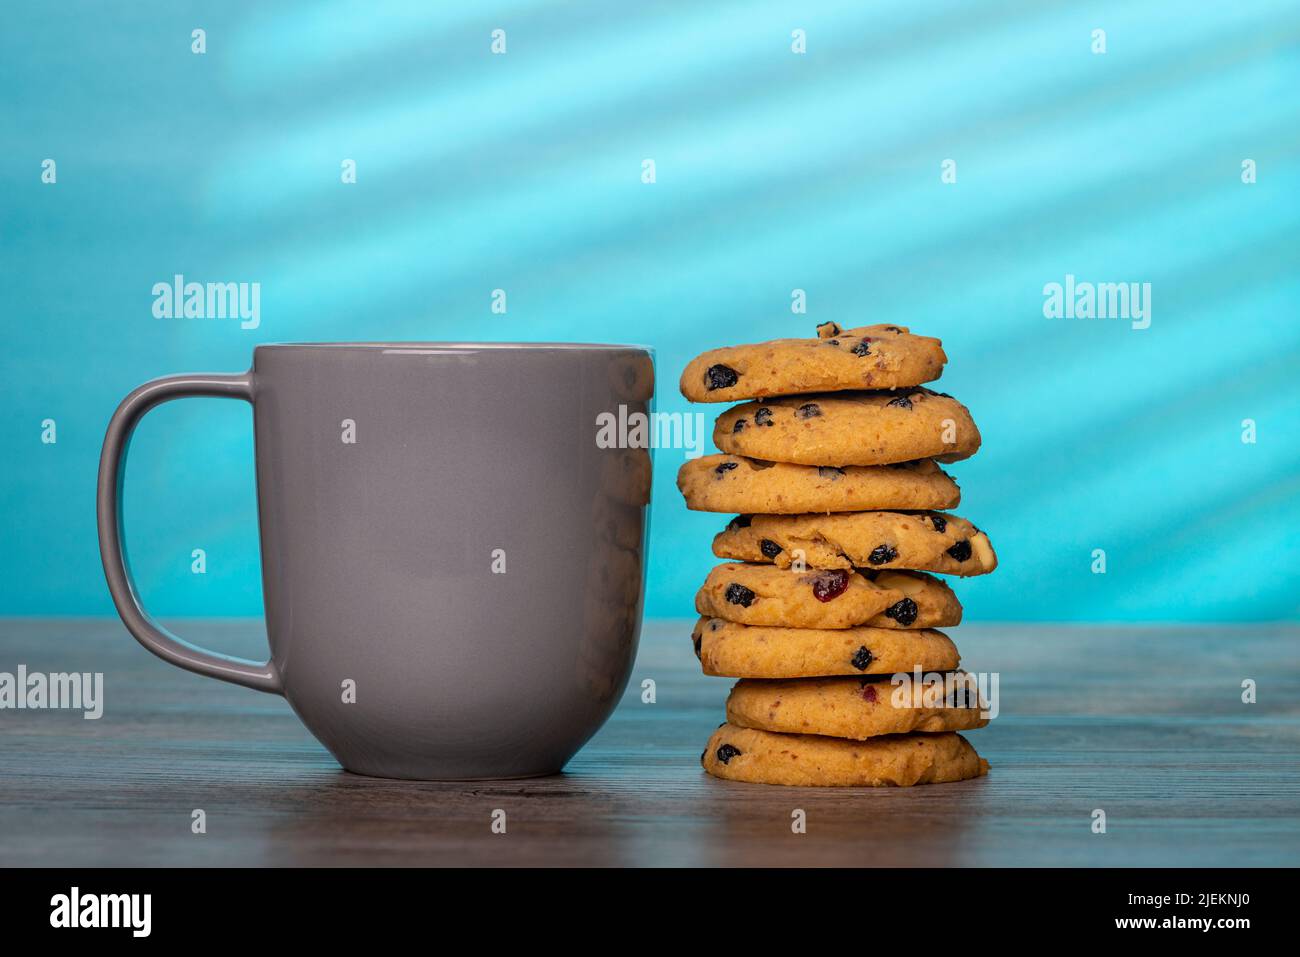 pila de galletas caseras y una taza gris sobre un fondo azul Foto de stock